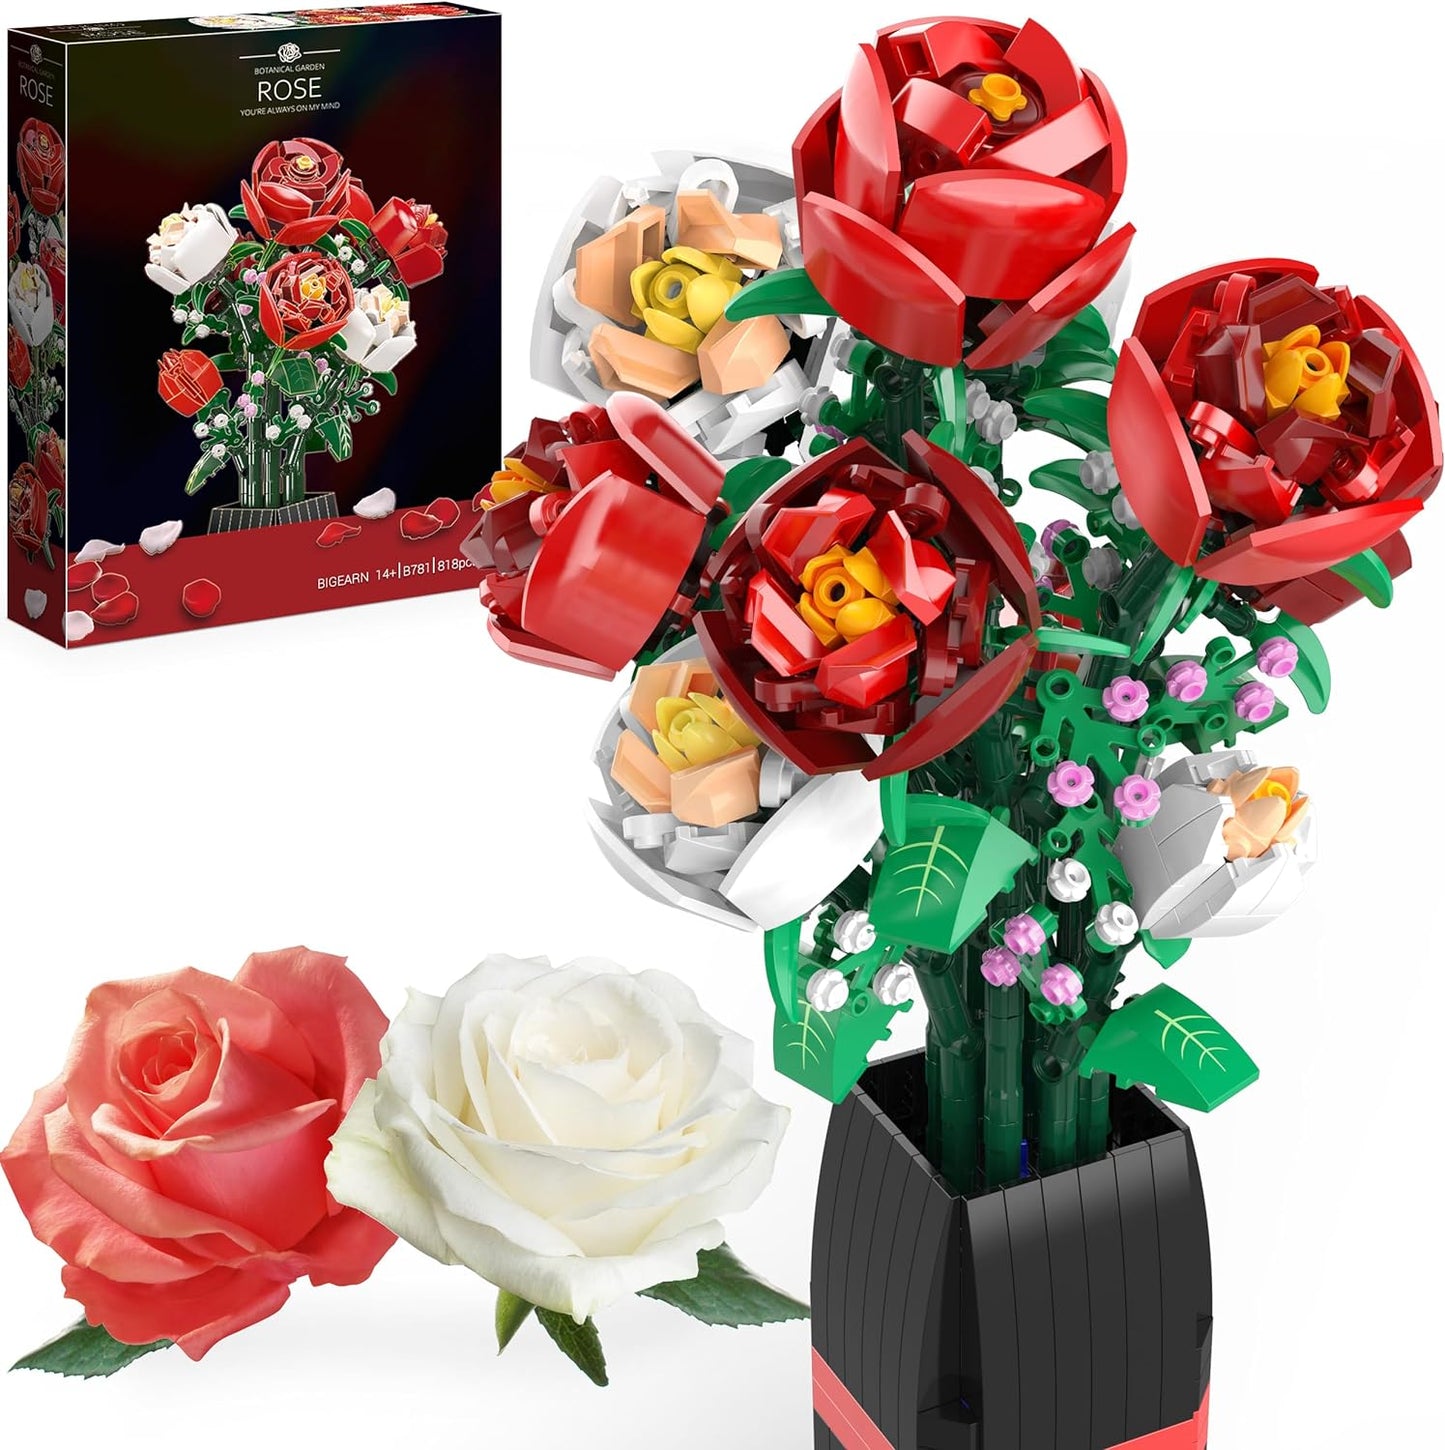 Ensemble de construction de bouquets de fleurs (818 pièces) – Cadeaux de Noël, de fête des mères ou de Saint-Valentin, idéal pour les enfants, les femmes, les filles et les garçons, ensemble de construction de roses avec vase 